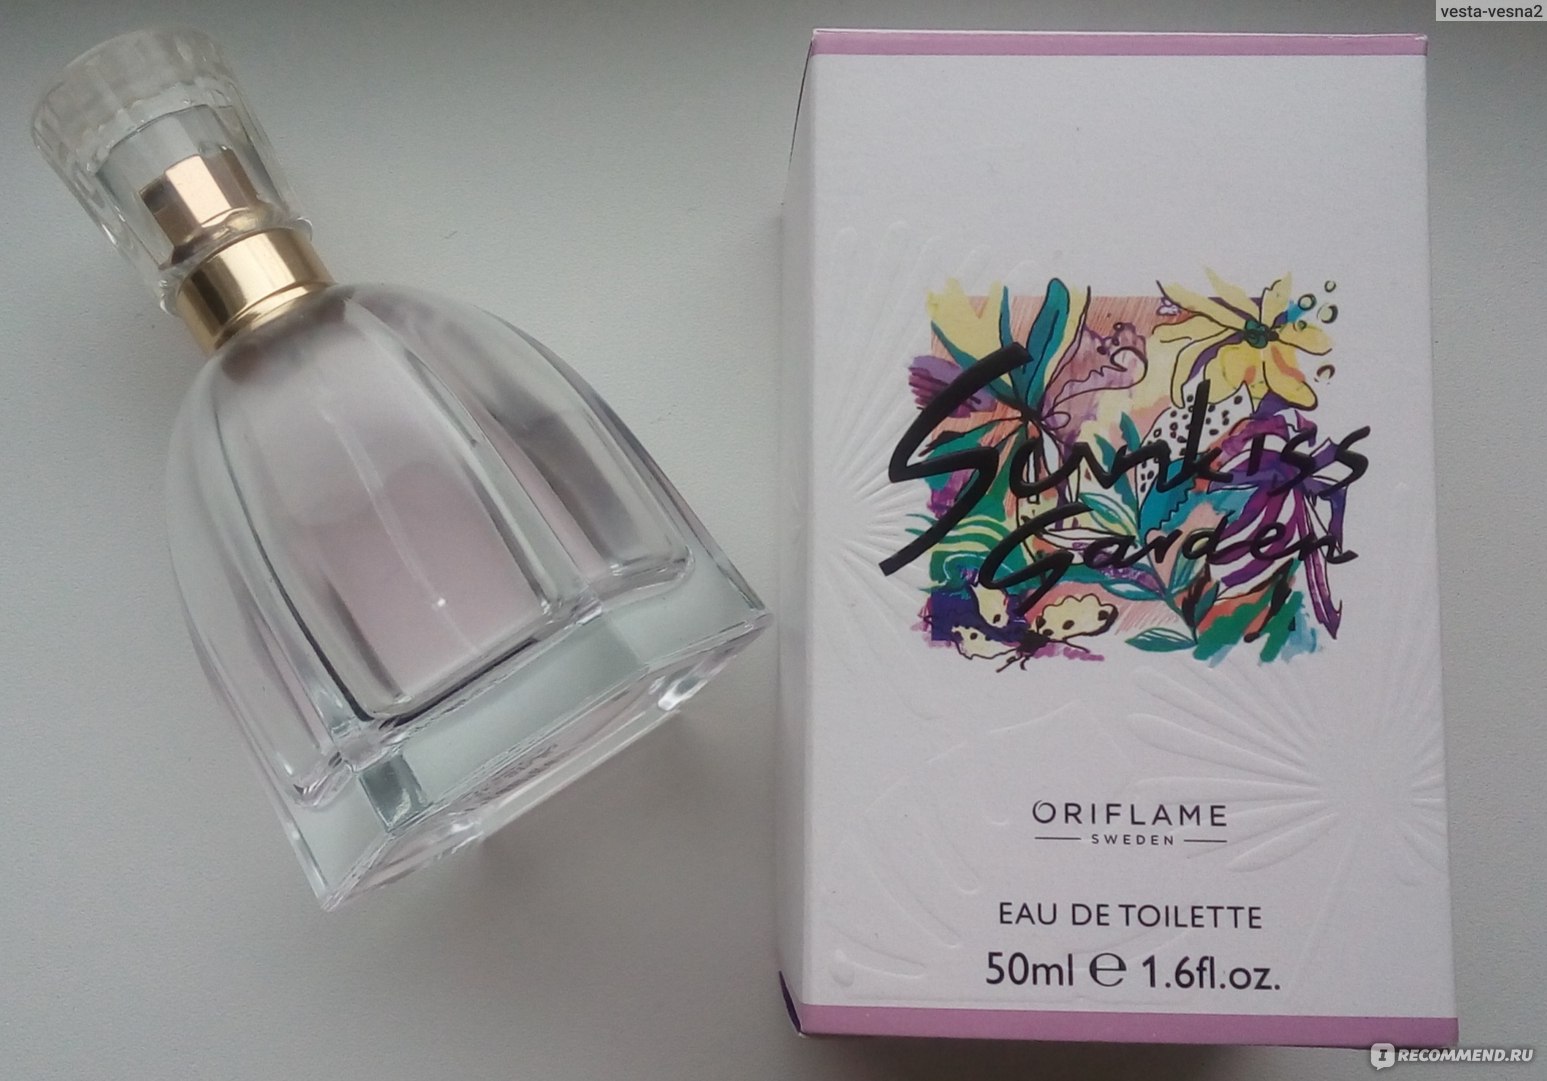 SUNKISS Garden EdT Eau de Toilette parfum perfume Oriflame 34473